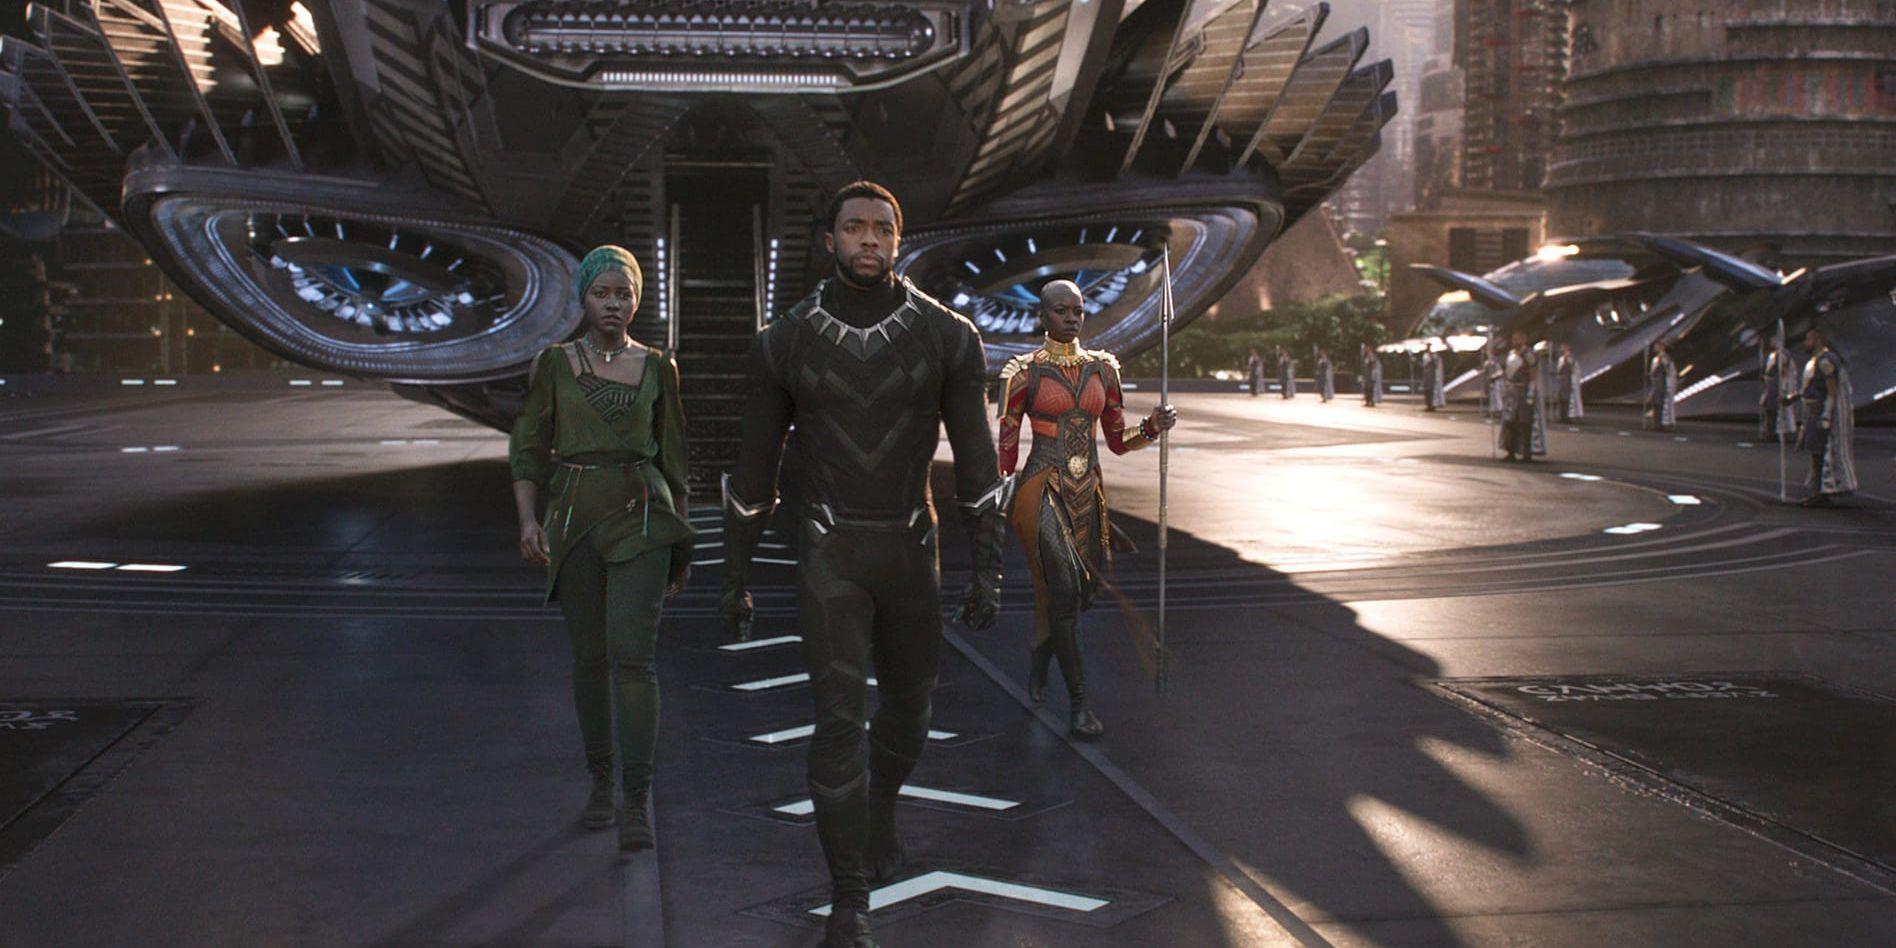 Spionen Nakia (Lupita Nyong'o), kung T'Challa (Chadwick Boseman) och Okoye (Danai Gurira) kämpar tillsammans för Wakanda i "Black Panther". Pressbild.